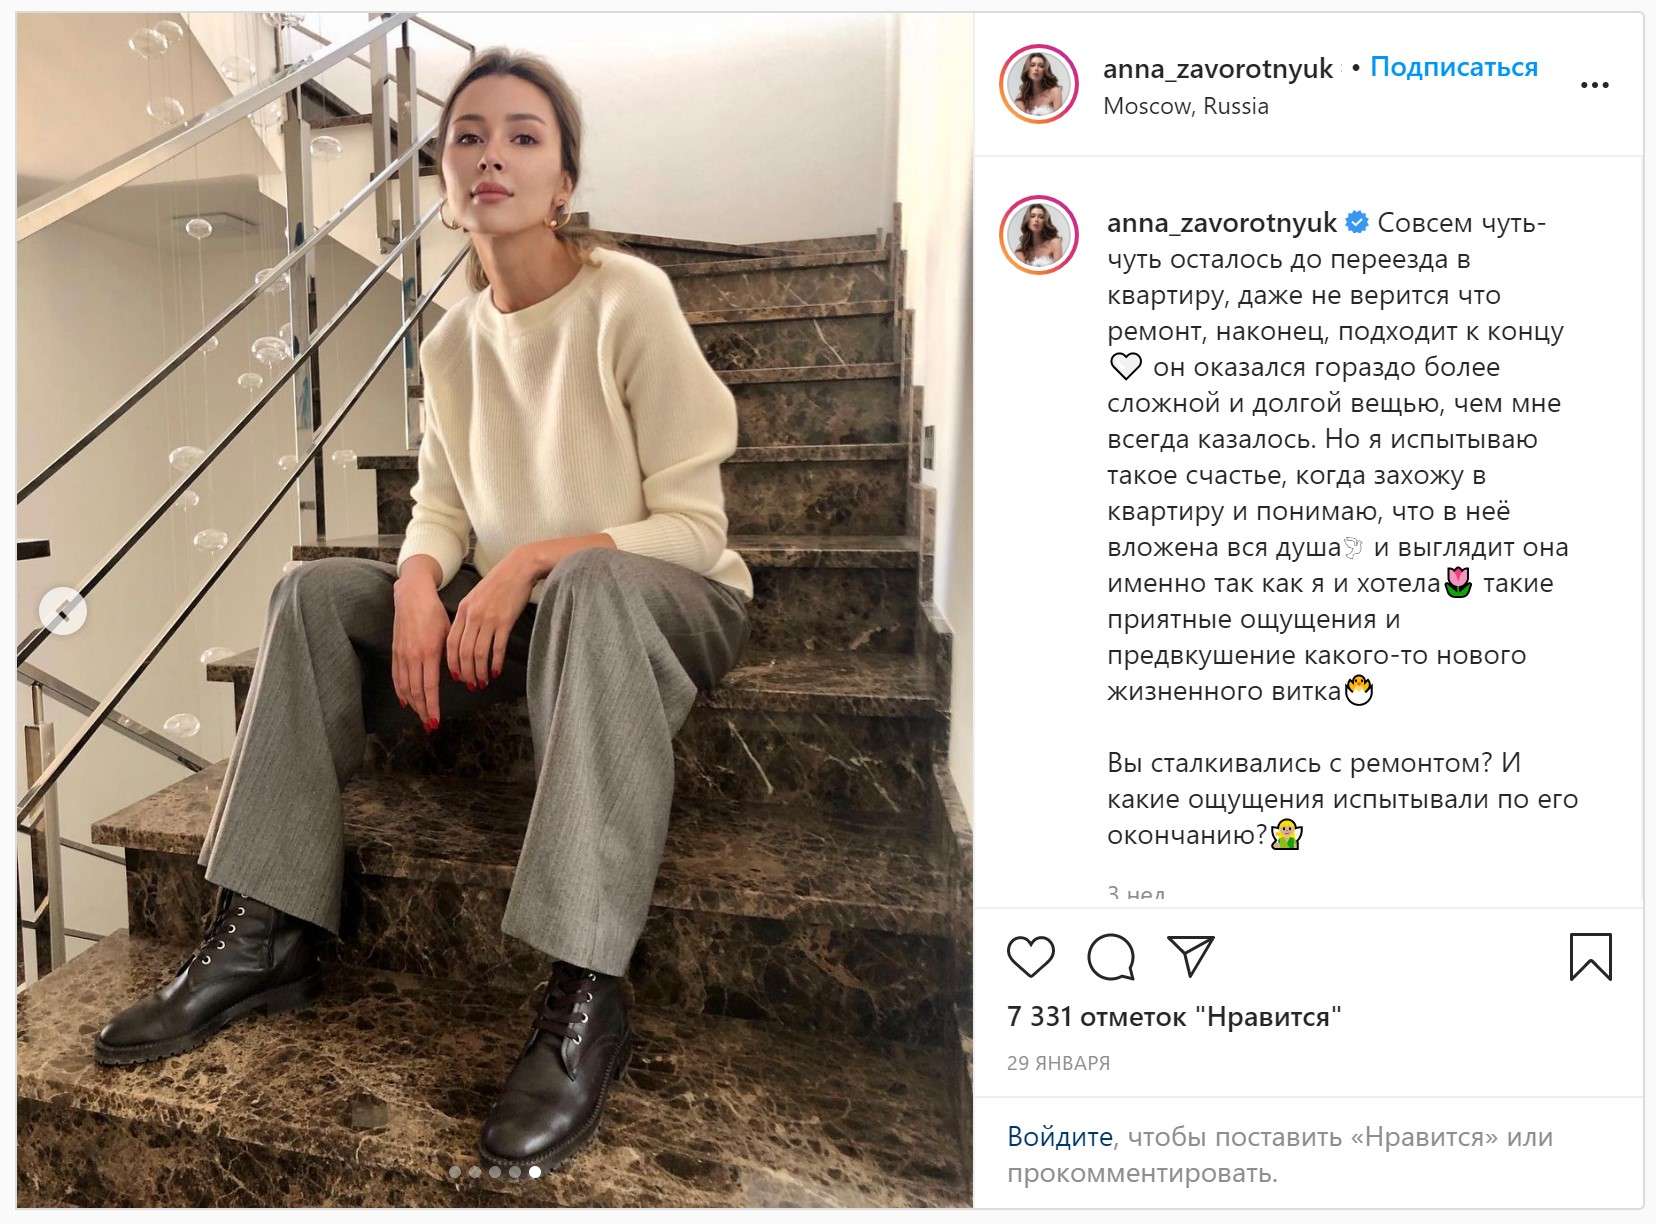 О том что происходит в Семье Заворотнюк, рассказала дочь актрисы, Анна